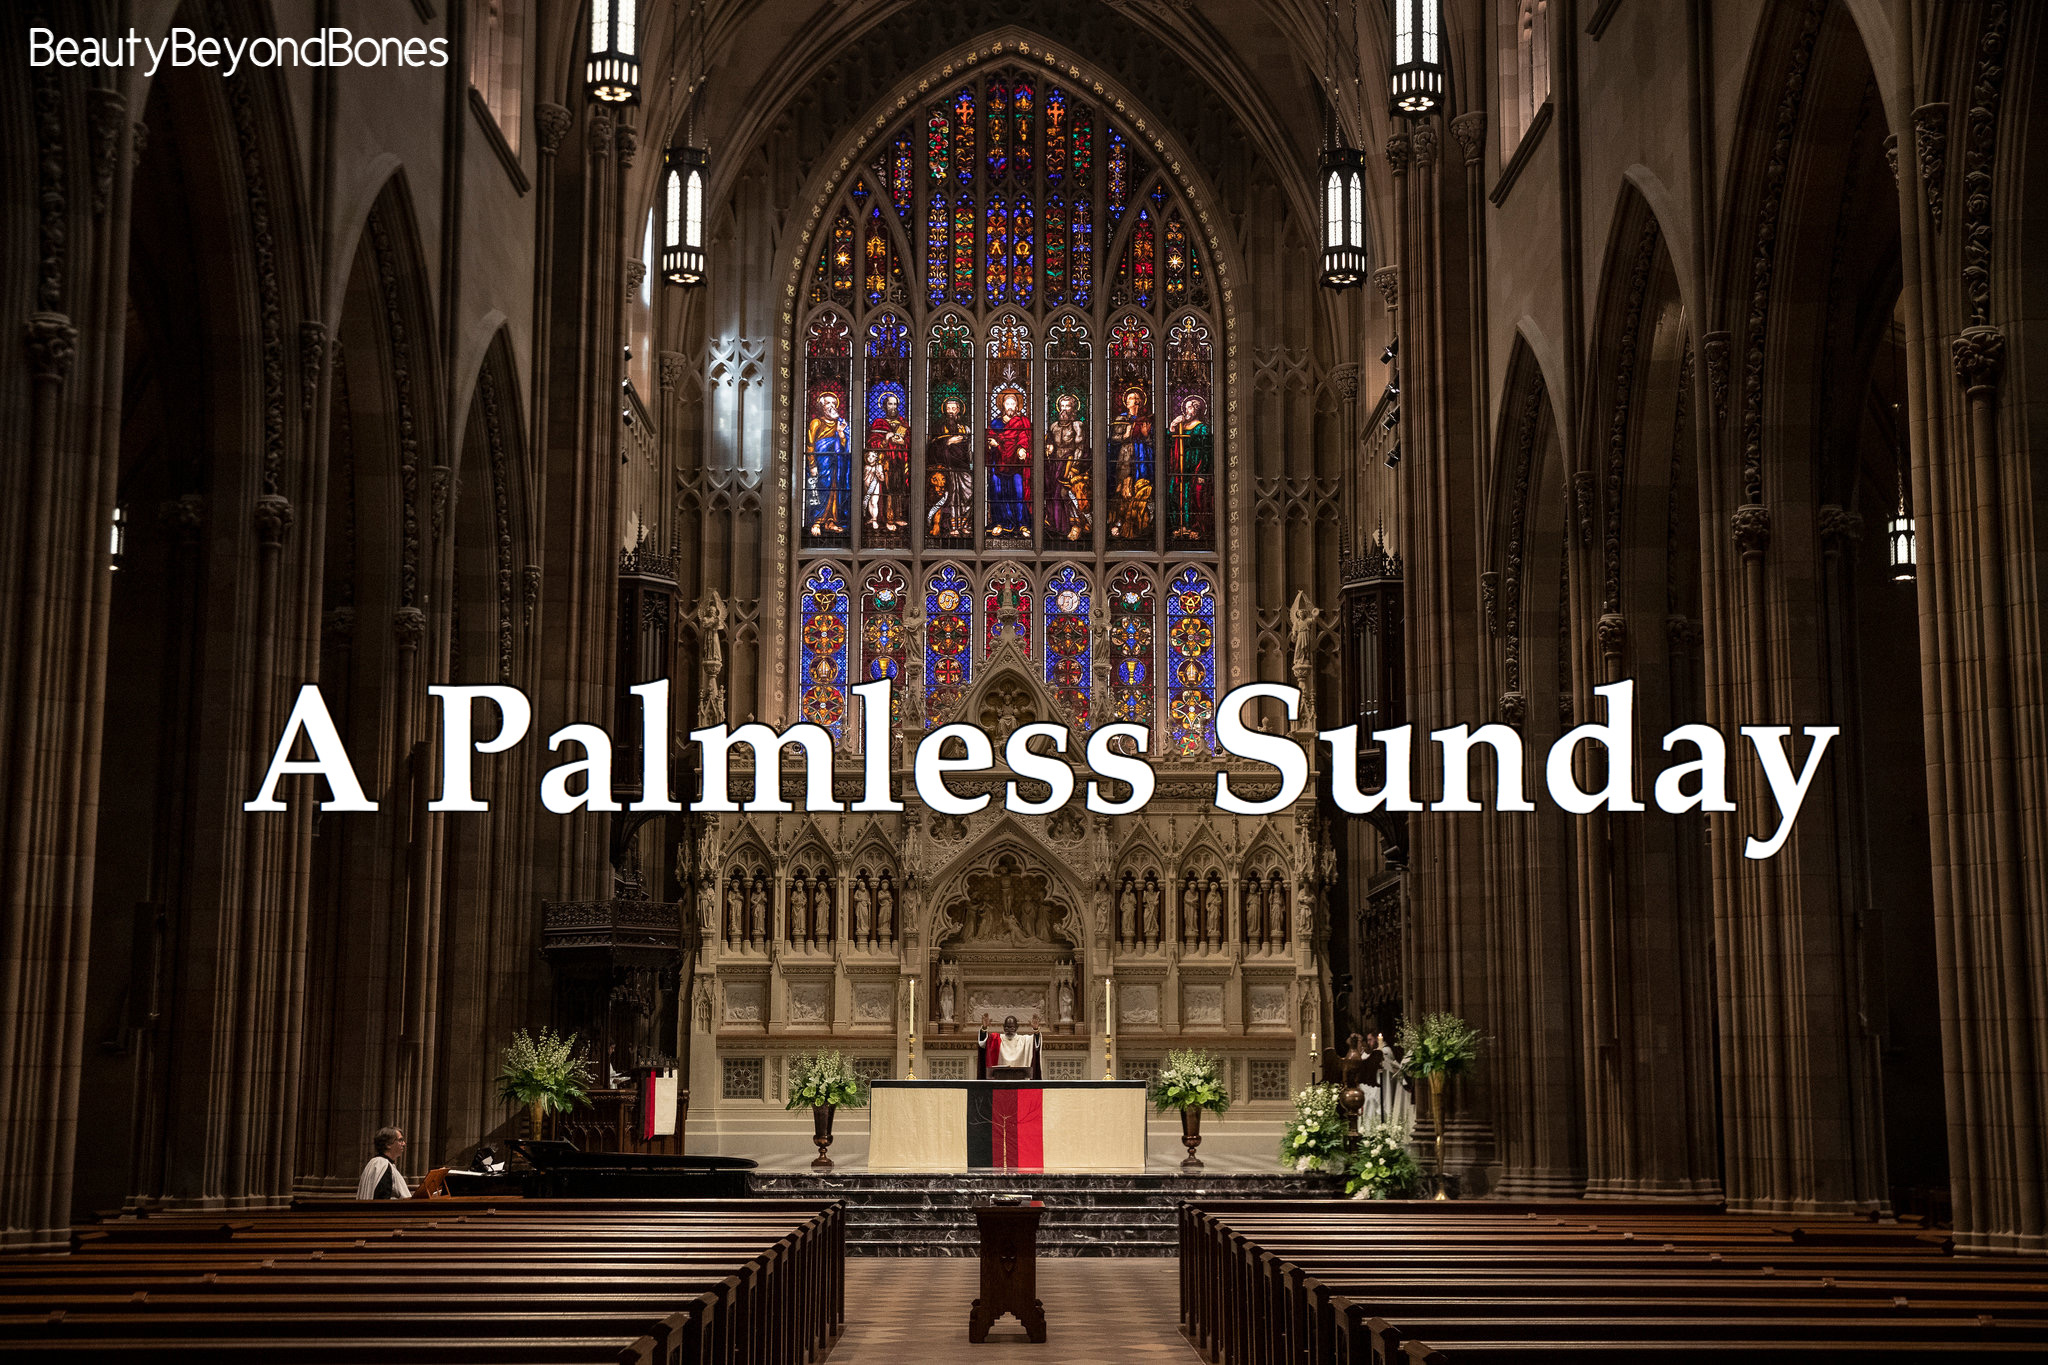 A Palmless Sunday